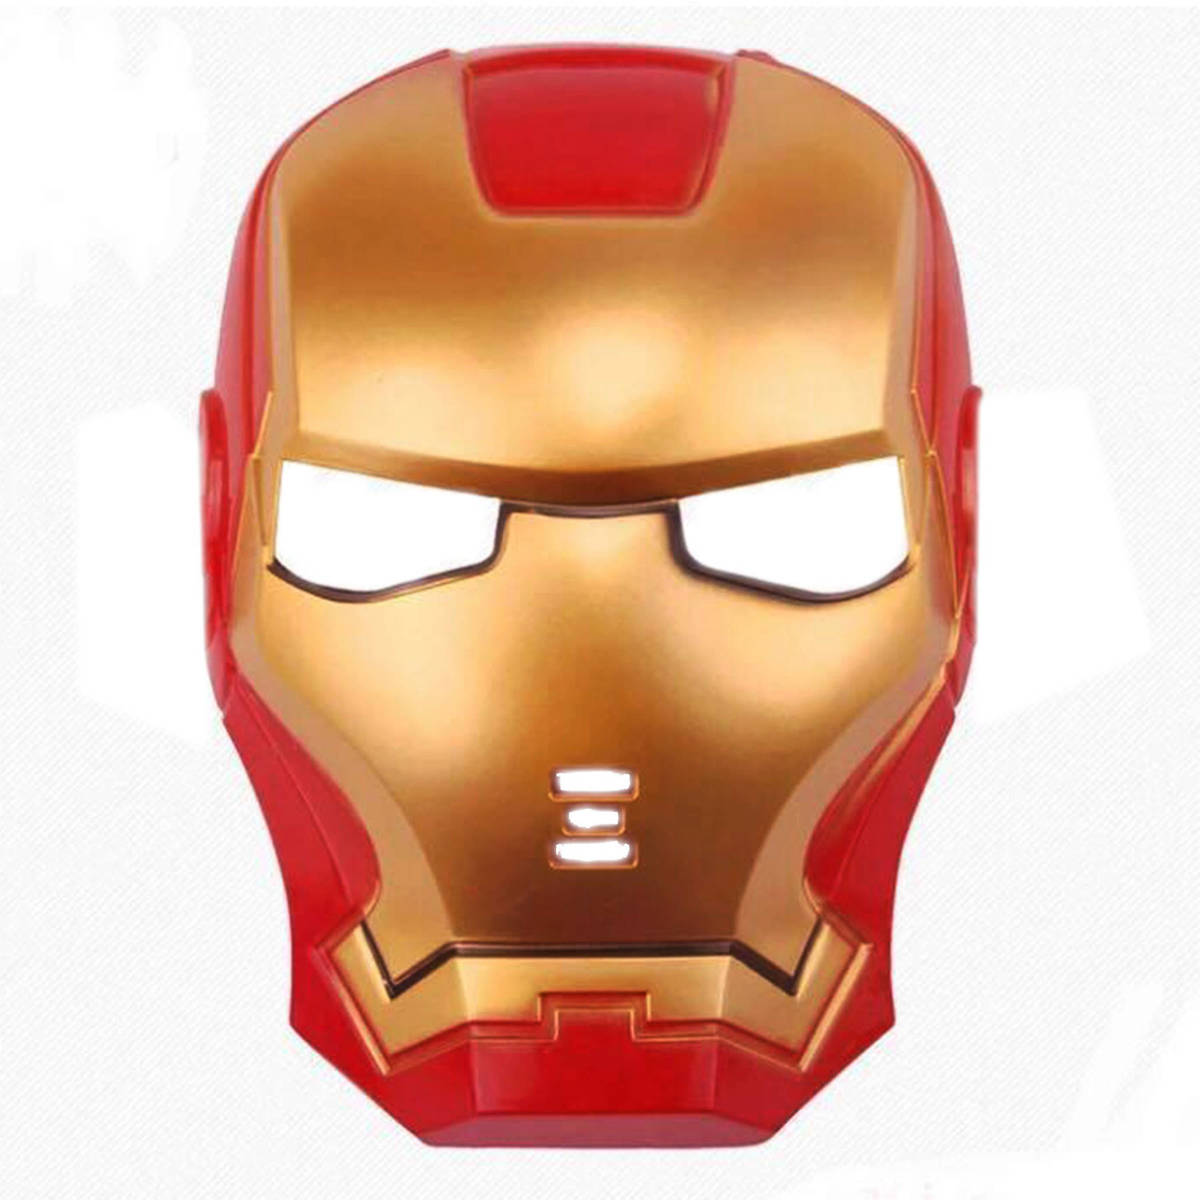 Strój Dla Chłopca Kostium Iron Man 122-134